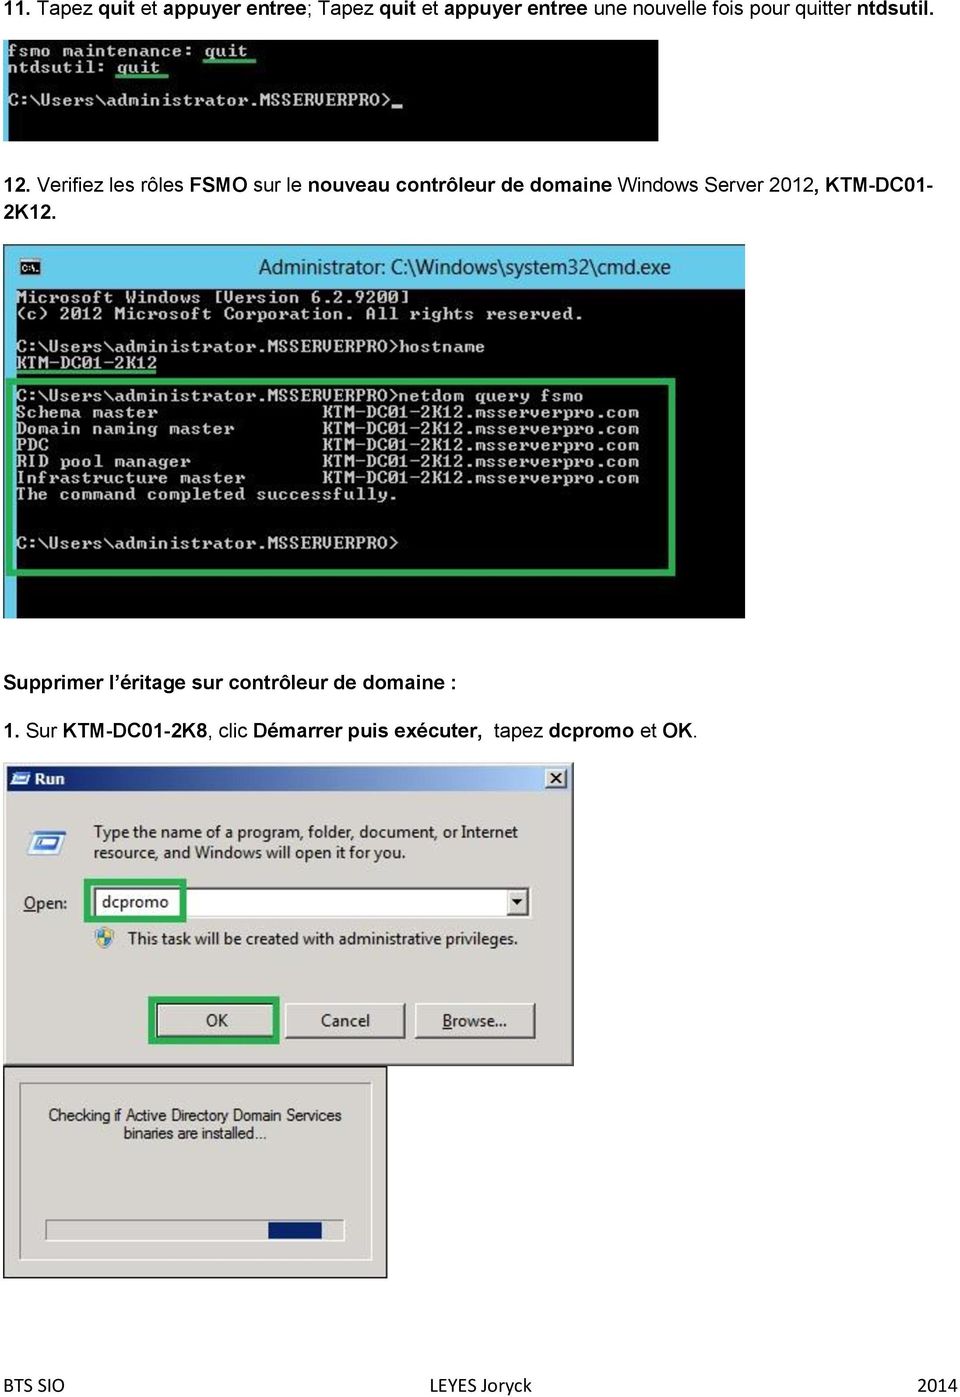 Verifiez les rôles FSMO sur le nouveau contrôleur de domaine Windows Server